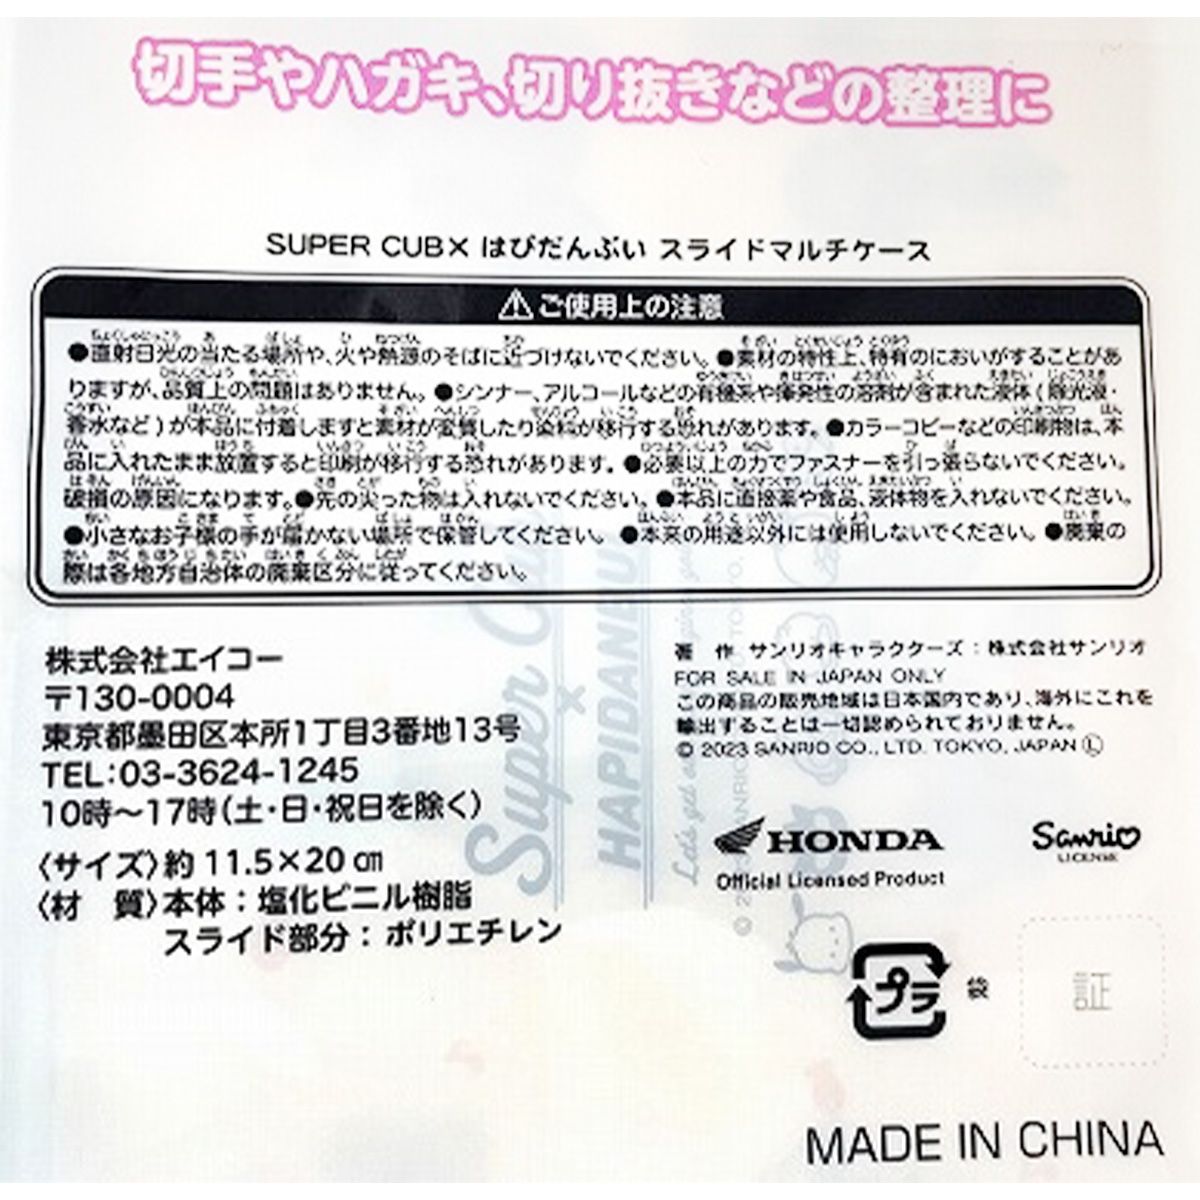 SUPER CUB×はぴだんぶい スライドマルチケース 0970/361066